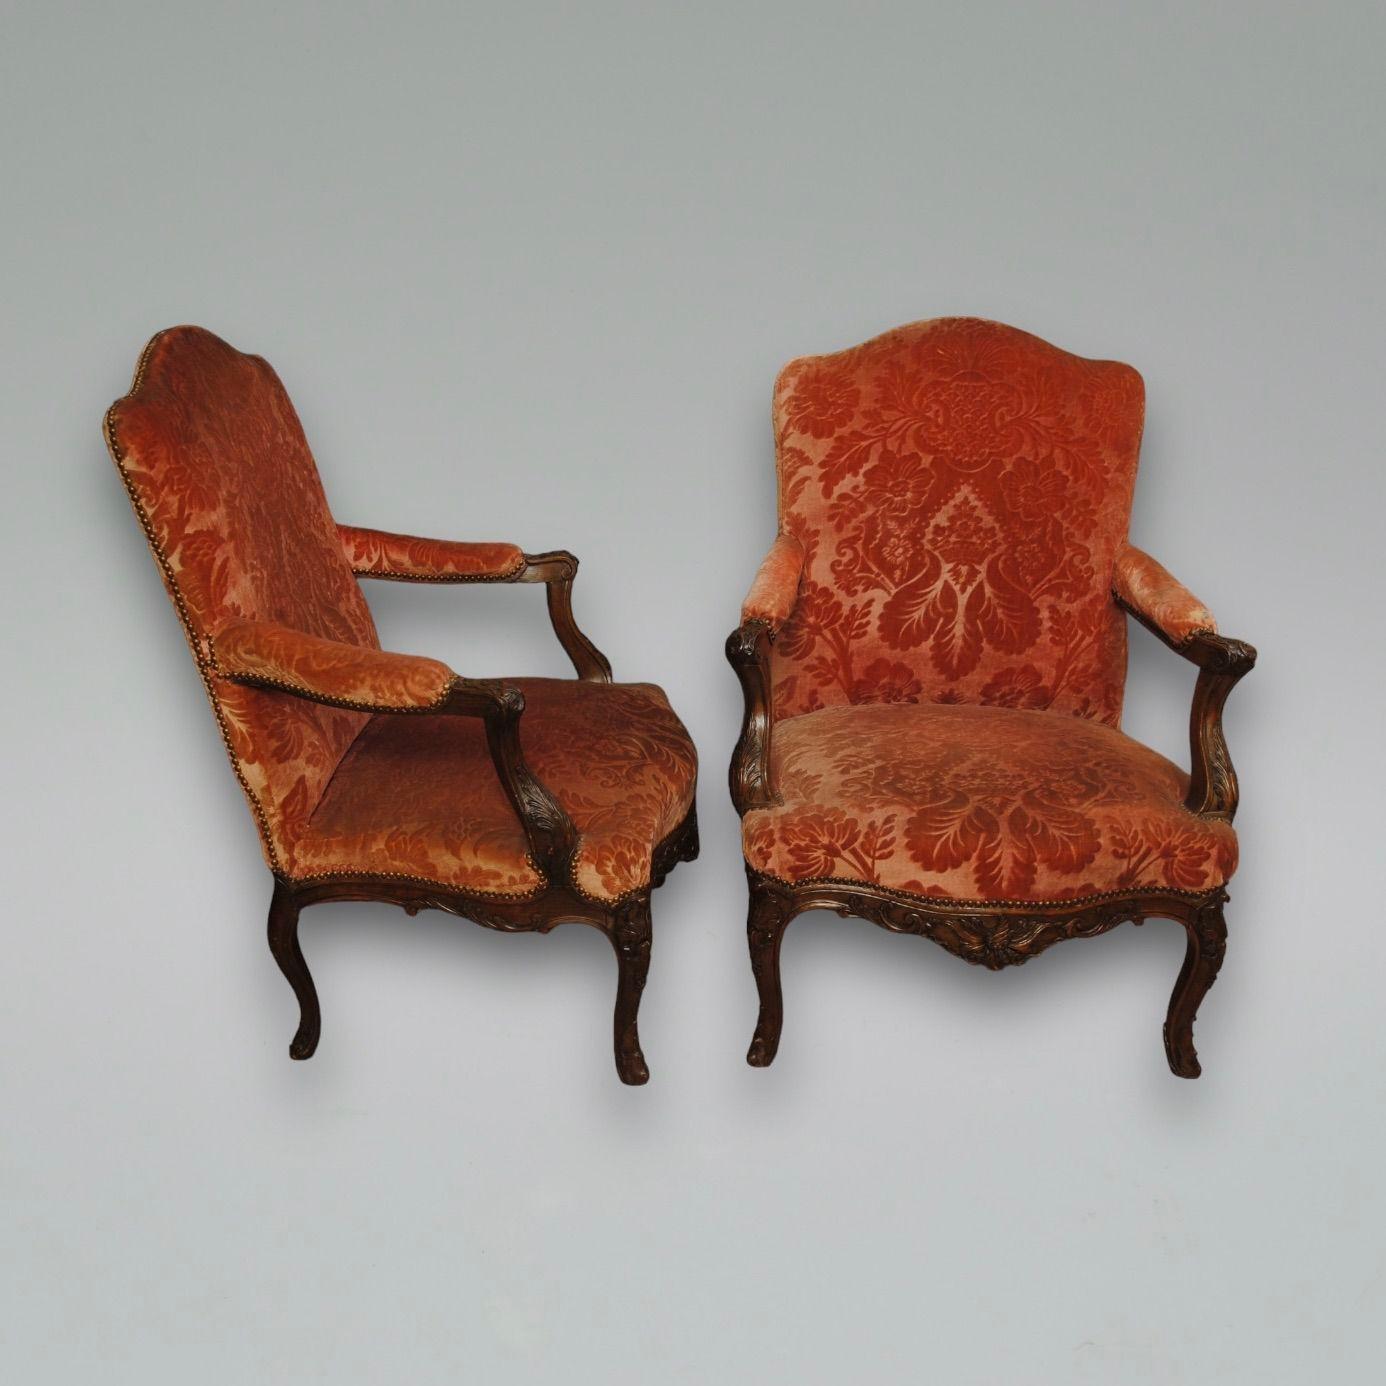 Ein dekoratives Paar offener Sessel aus geschnitztem Nussbaumholz aus der Mitte des 19. Jahrhunderts von guter Größe.